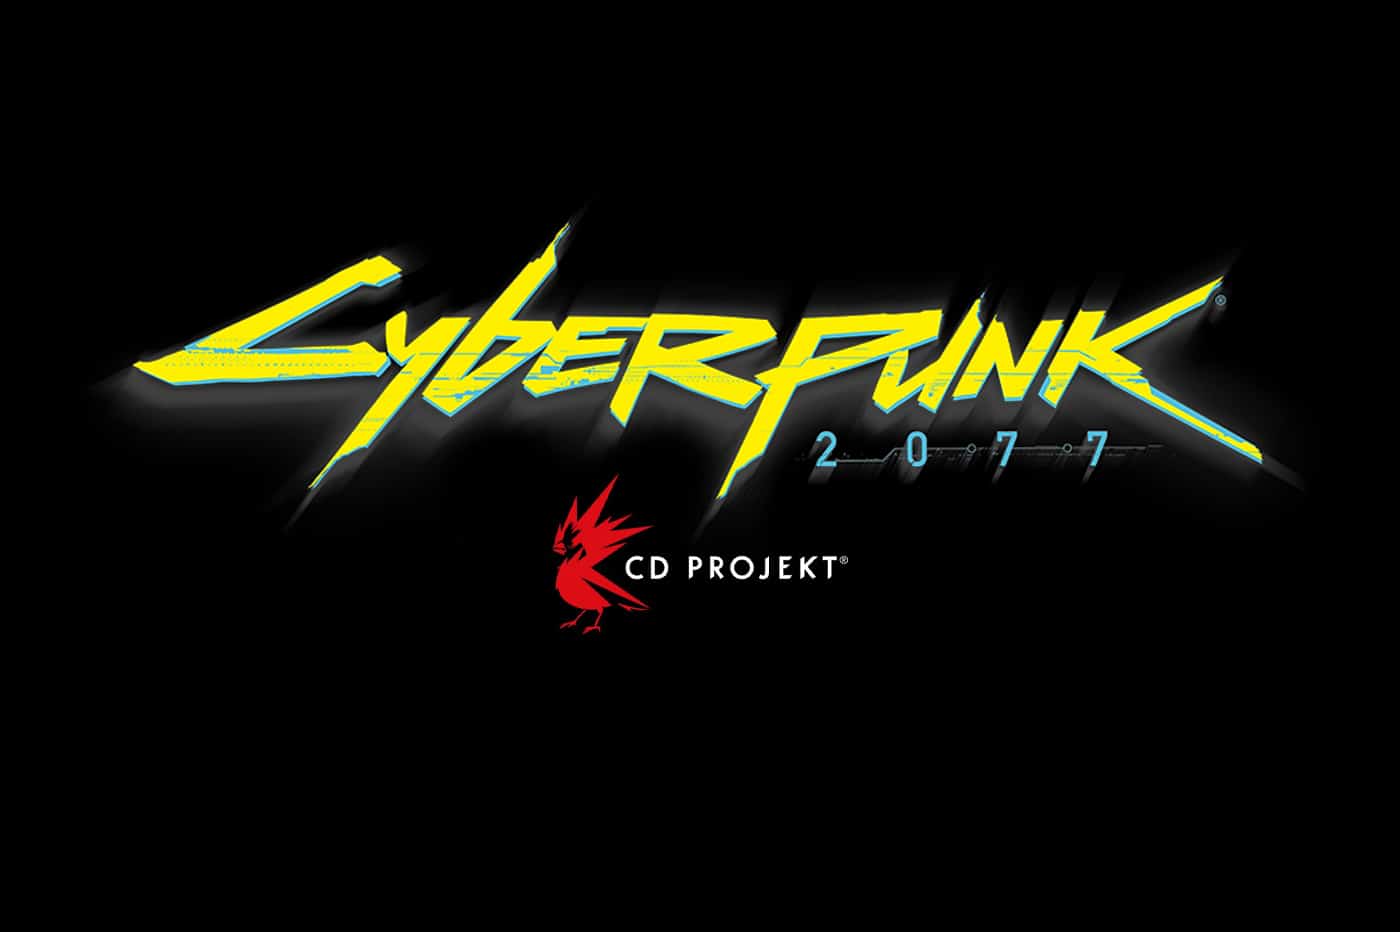 CD Projekt dans la tourmente après une cyberattaque et une dangereuse faille dans Cyberpunk 2077